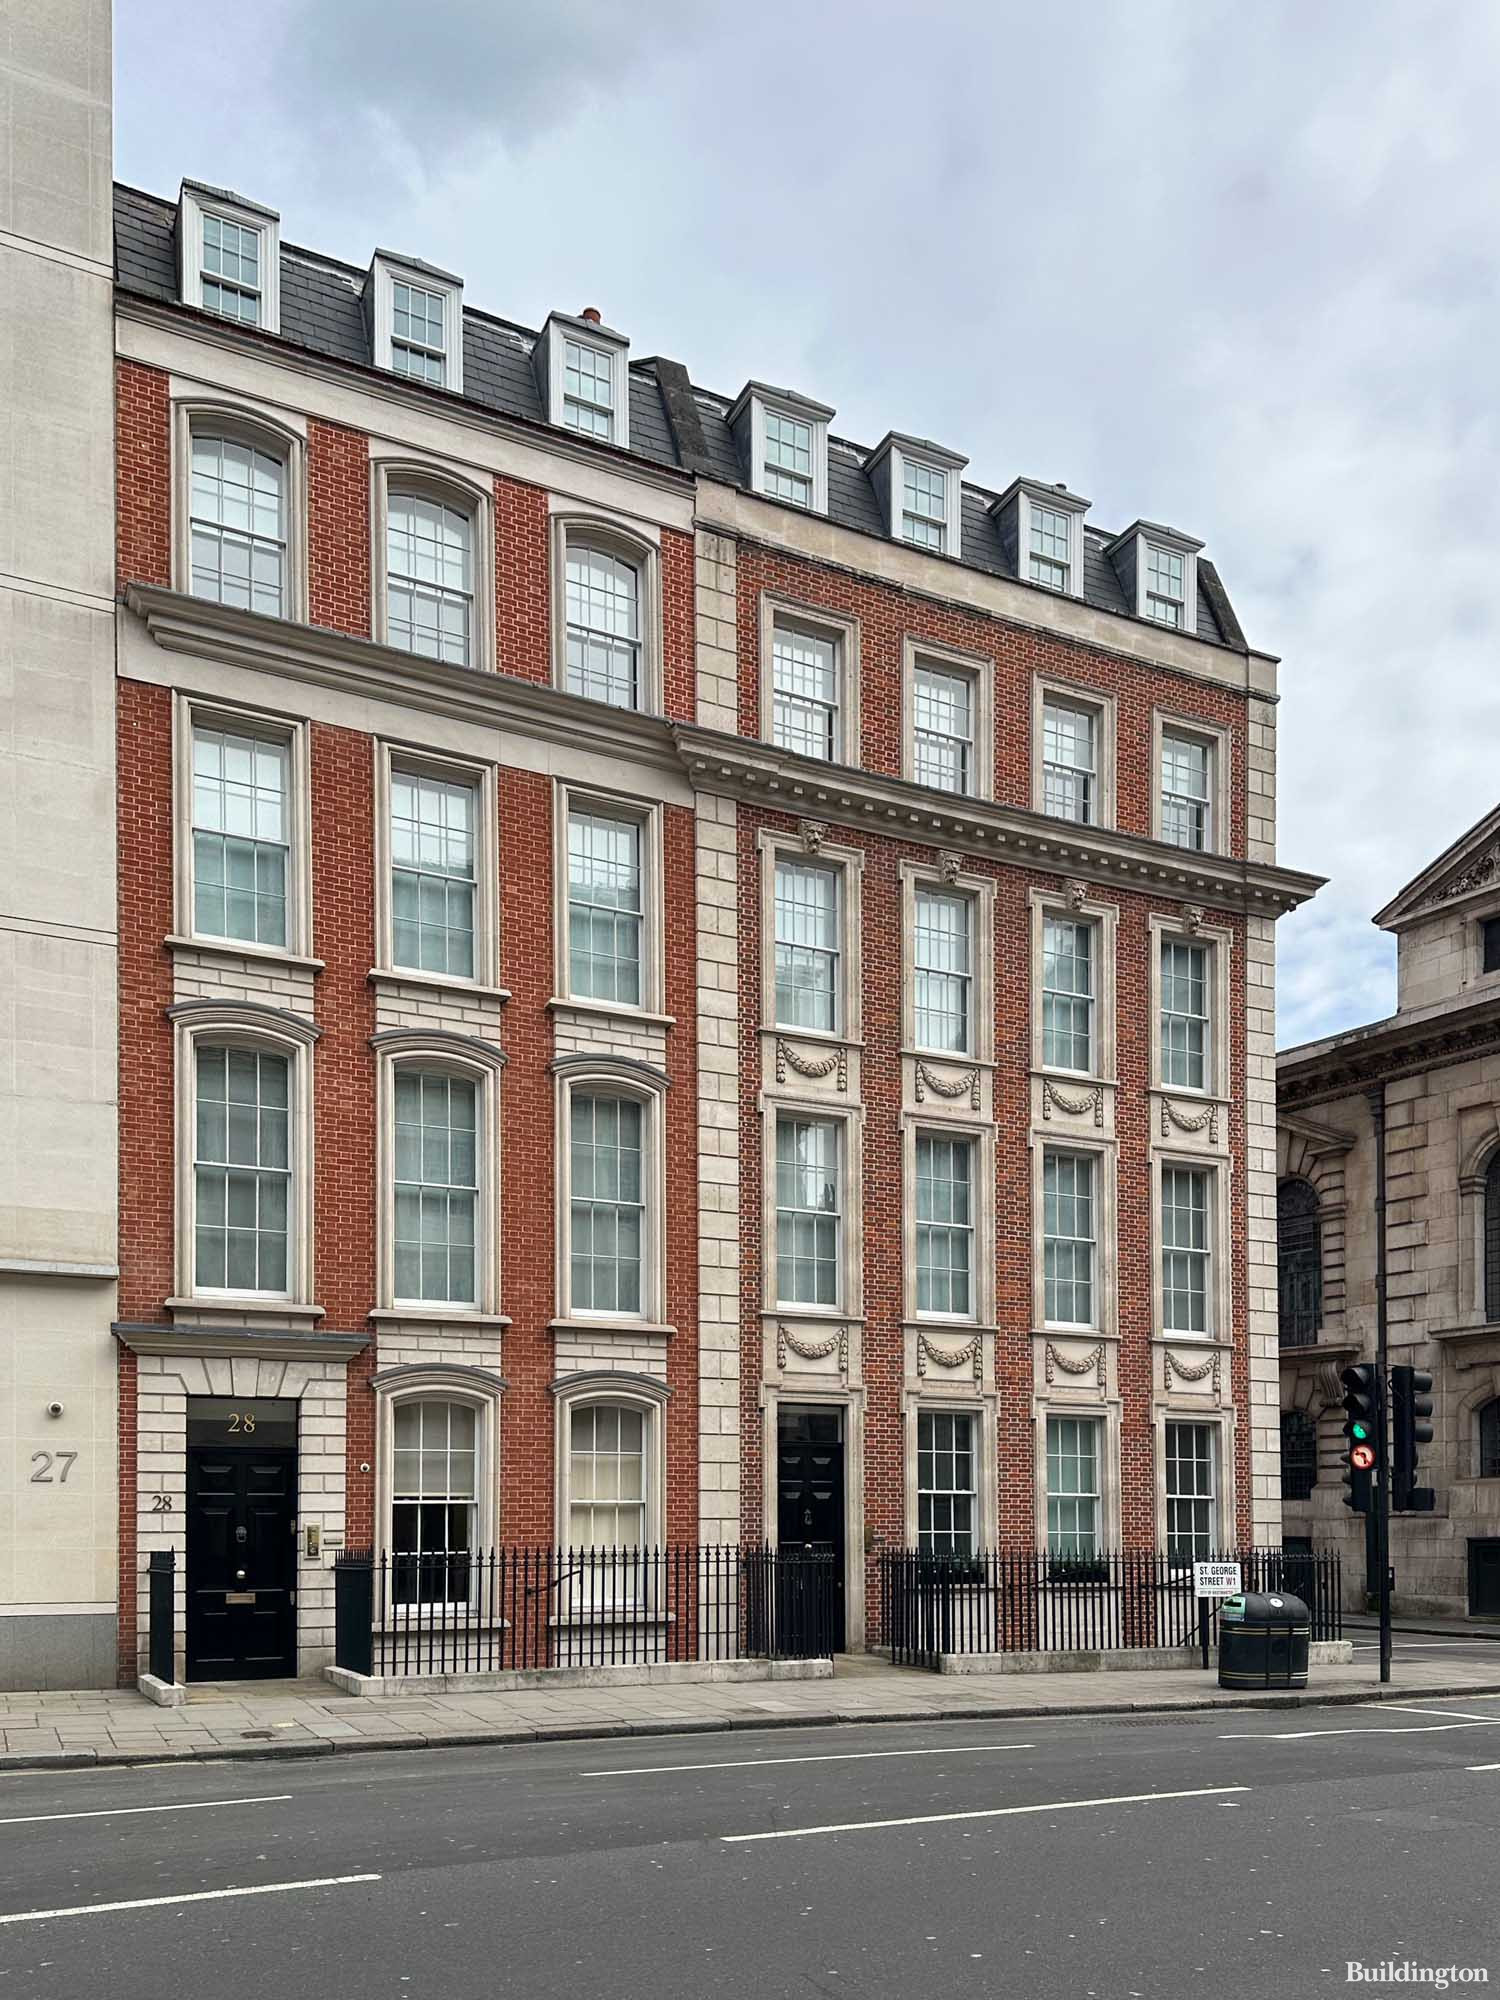 28-29 St George Street buildings in Mayfair, London W1.